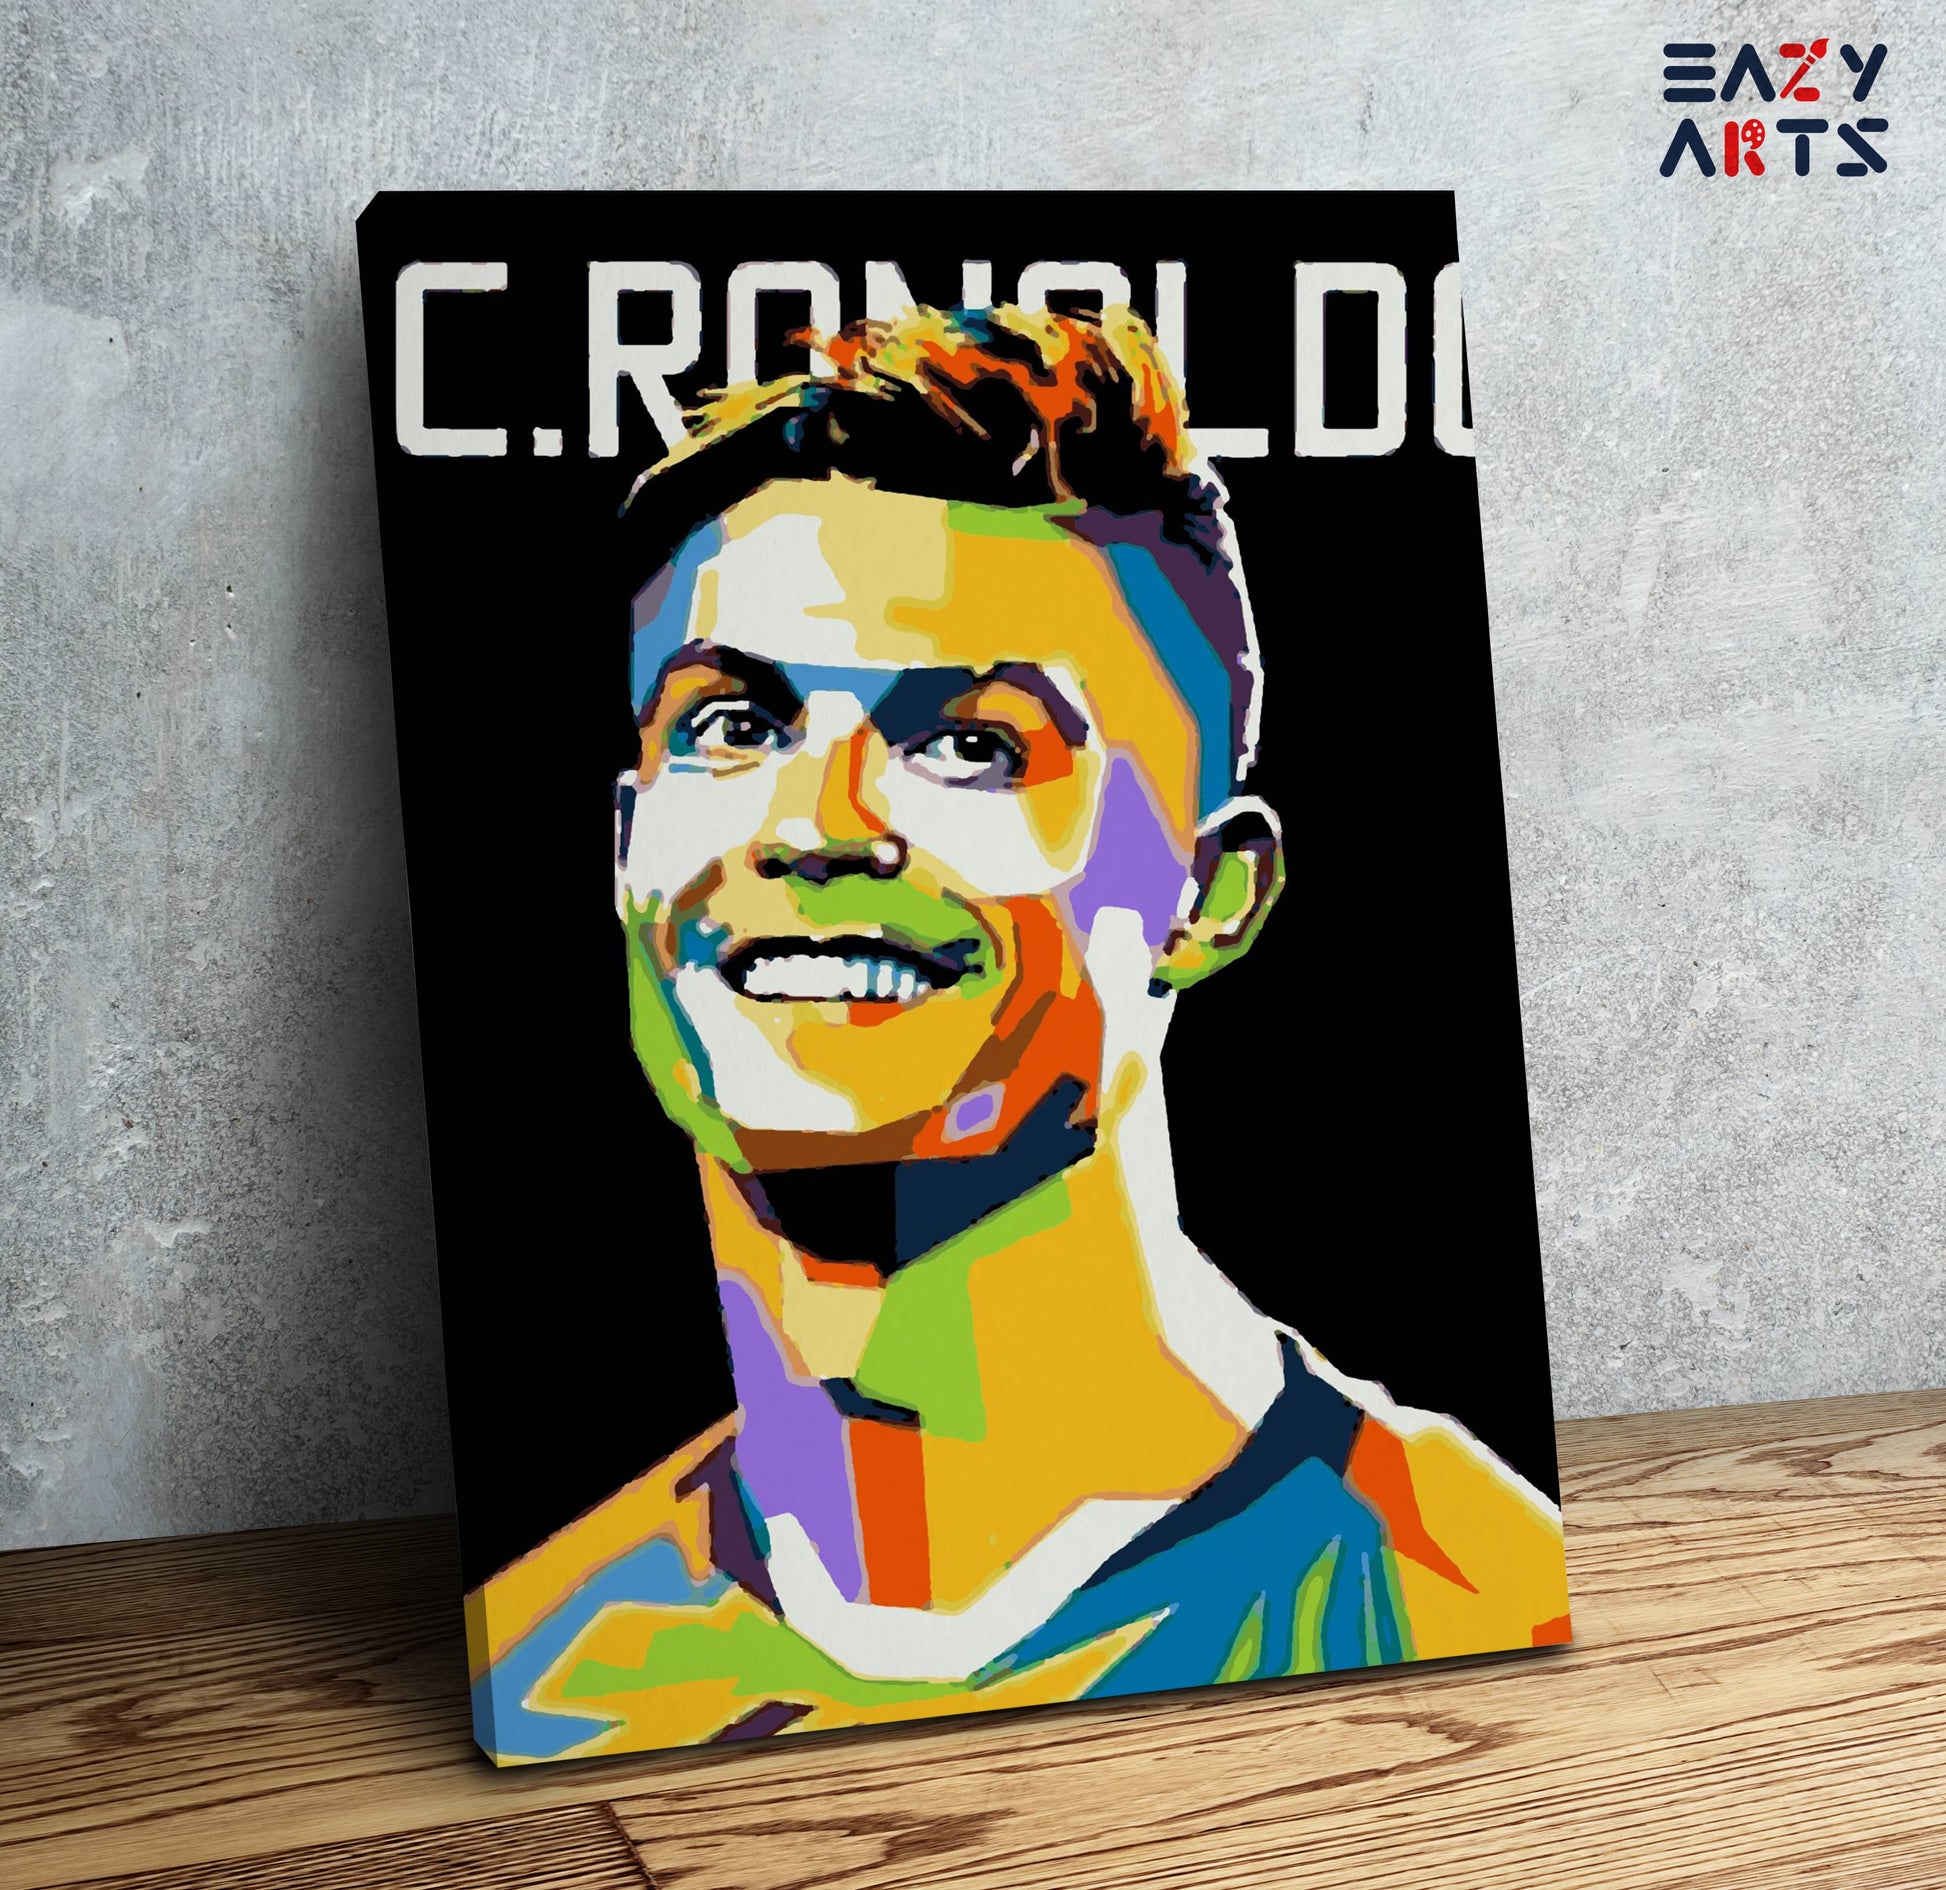 Cristiano Ronaldo Abstract PBN kit